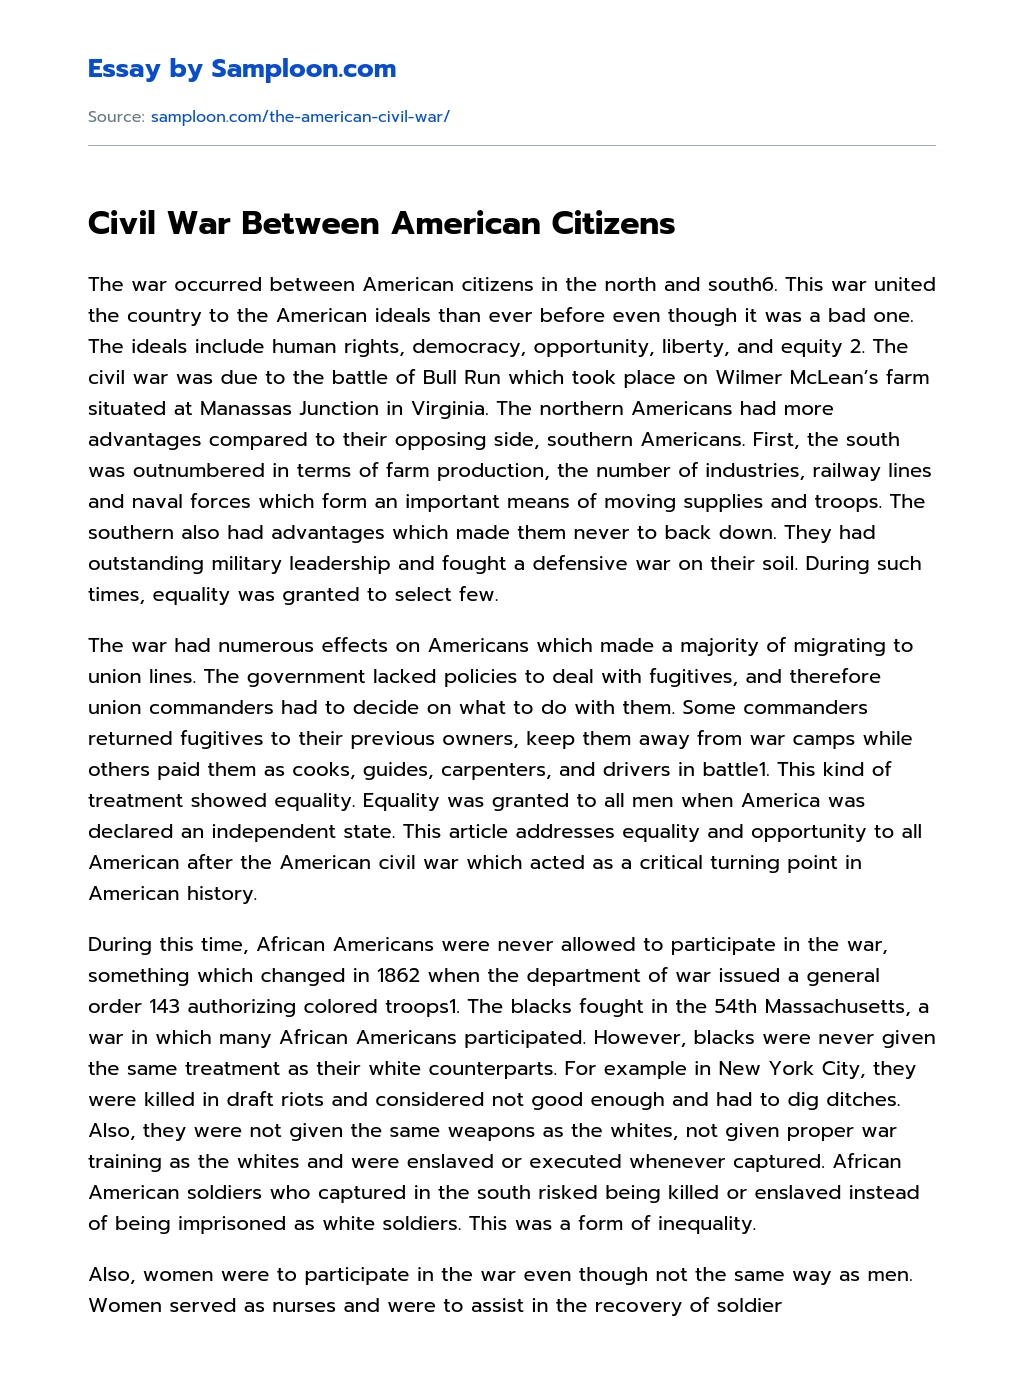 Civil War Between American Citizens essay